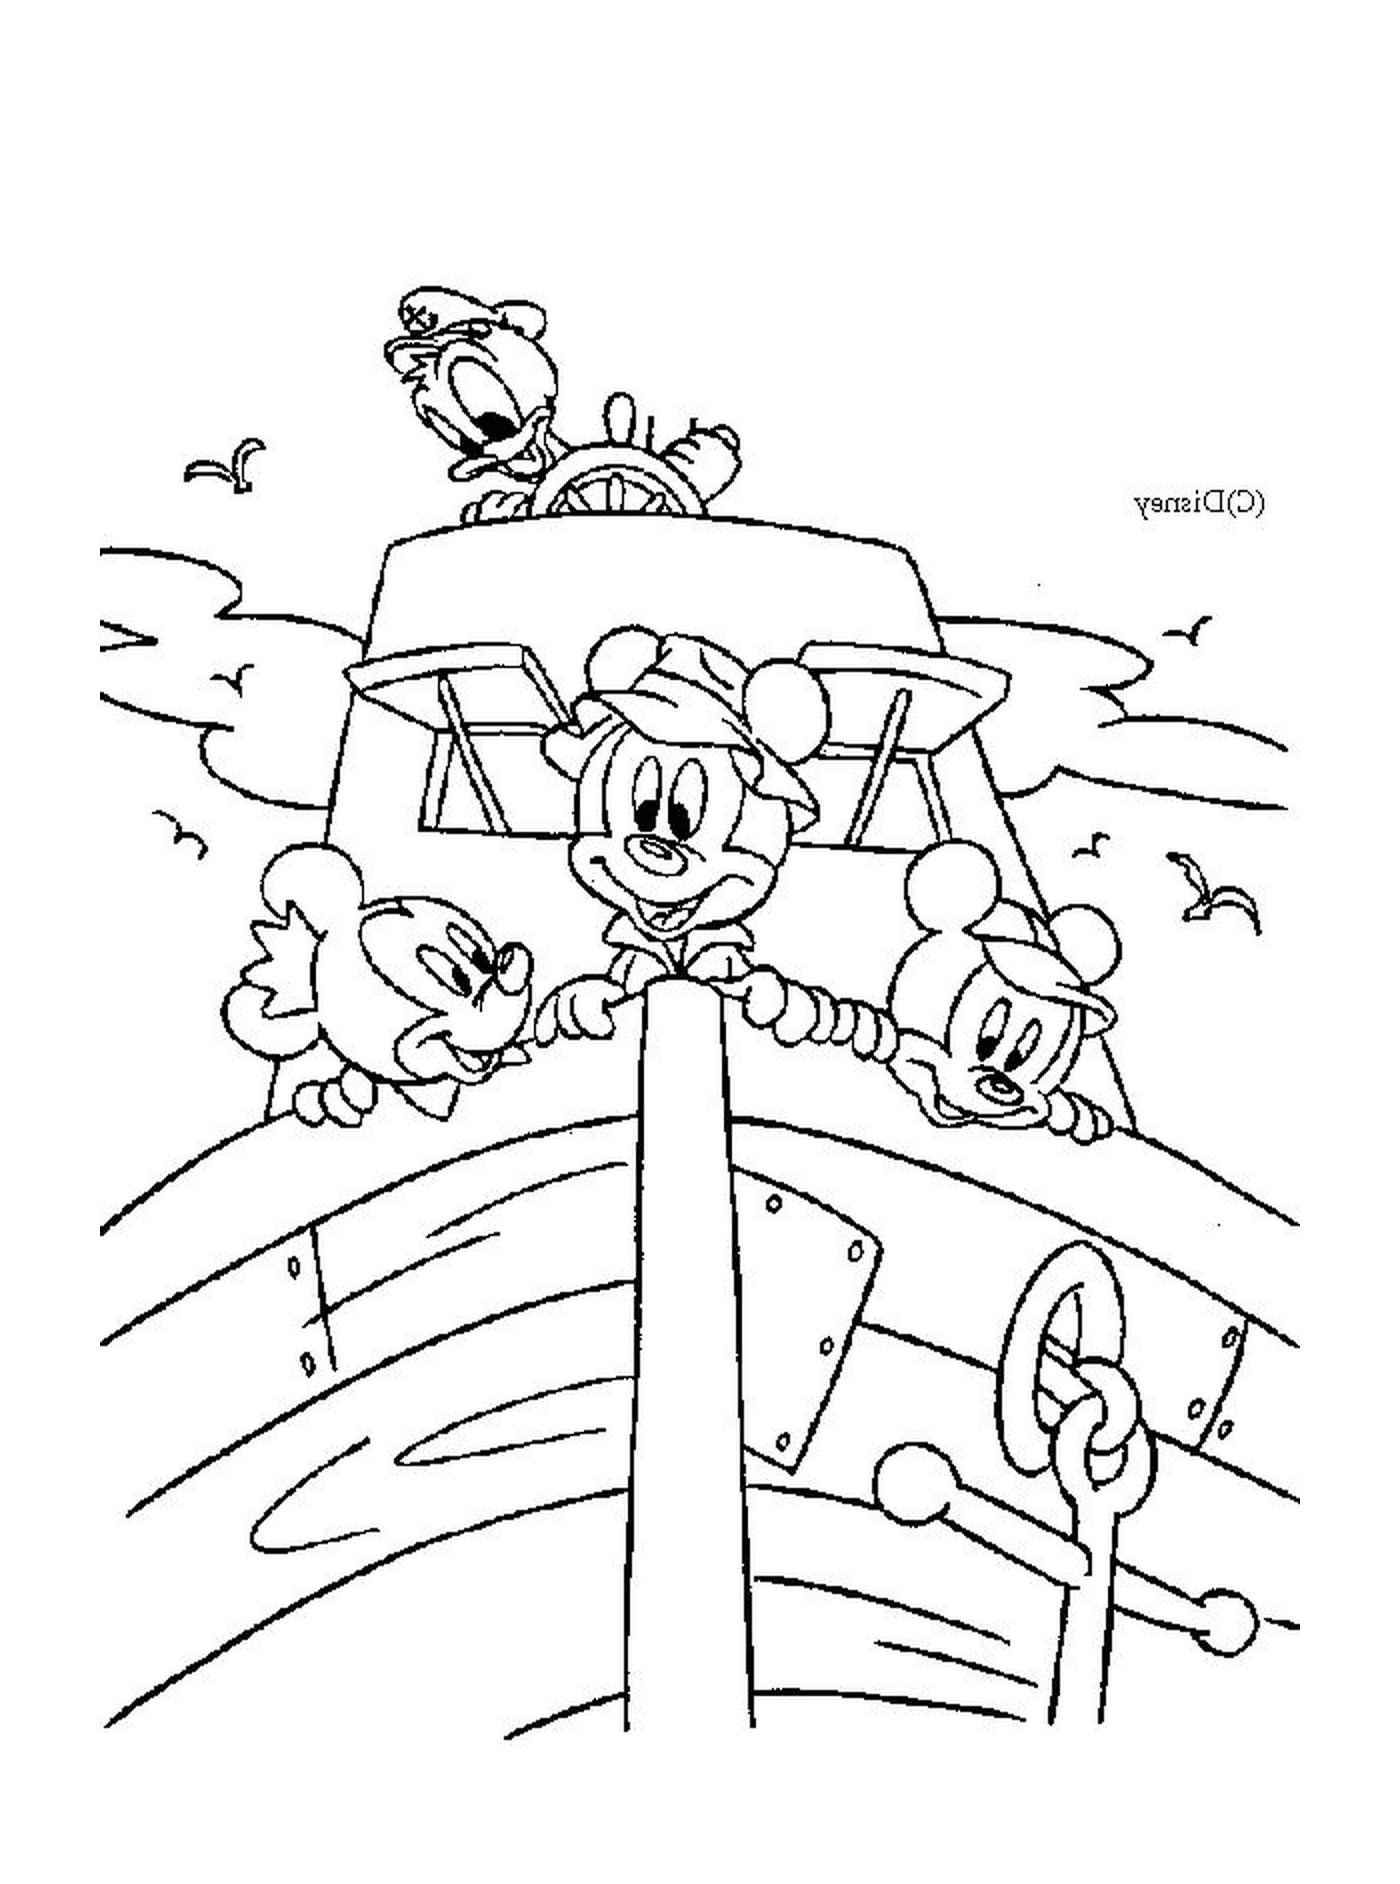  मिकी माउस और उसके दोस्तों का एक समूह नाव पर 